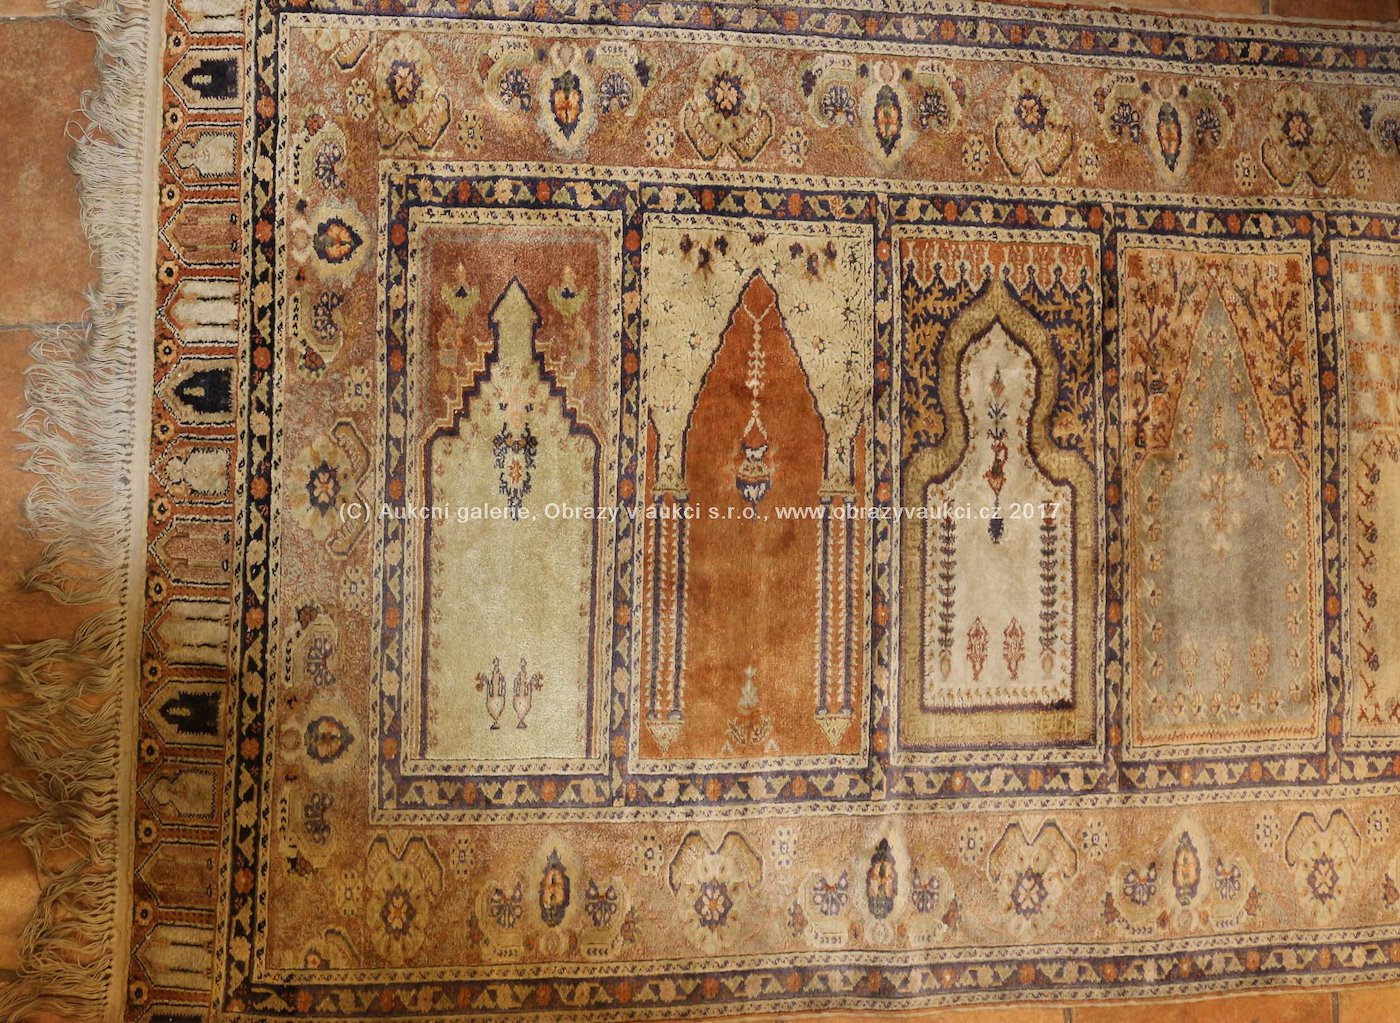 Turecko - Gördes, polovina 19. stol. - Modlitební koberec Gördes (Ghiorges) s řadou několika modlitebních nik "saf"